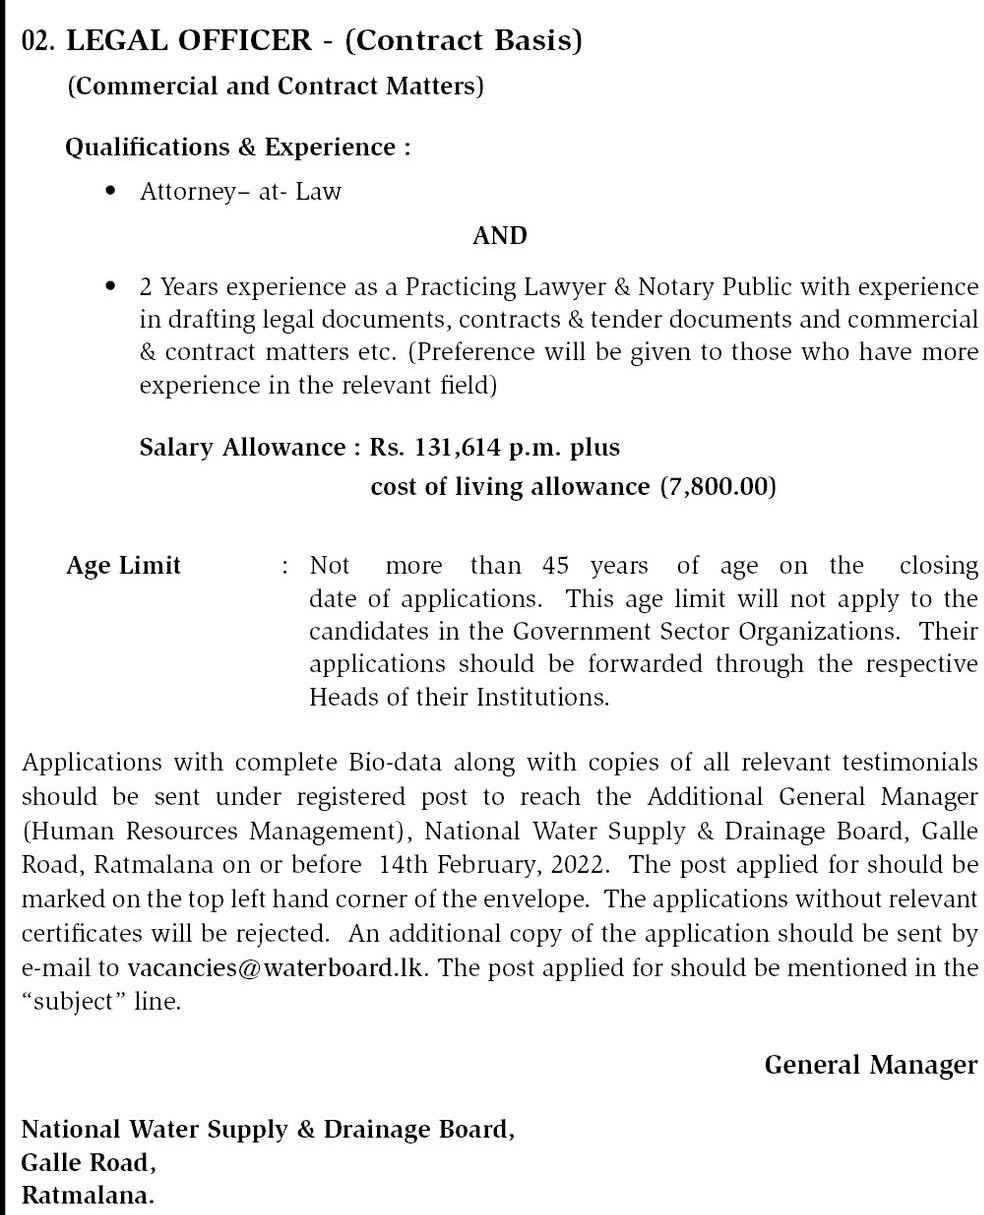 Water Board Job Vacancies 2022